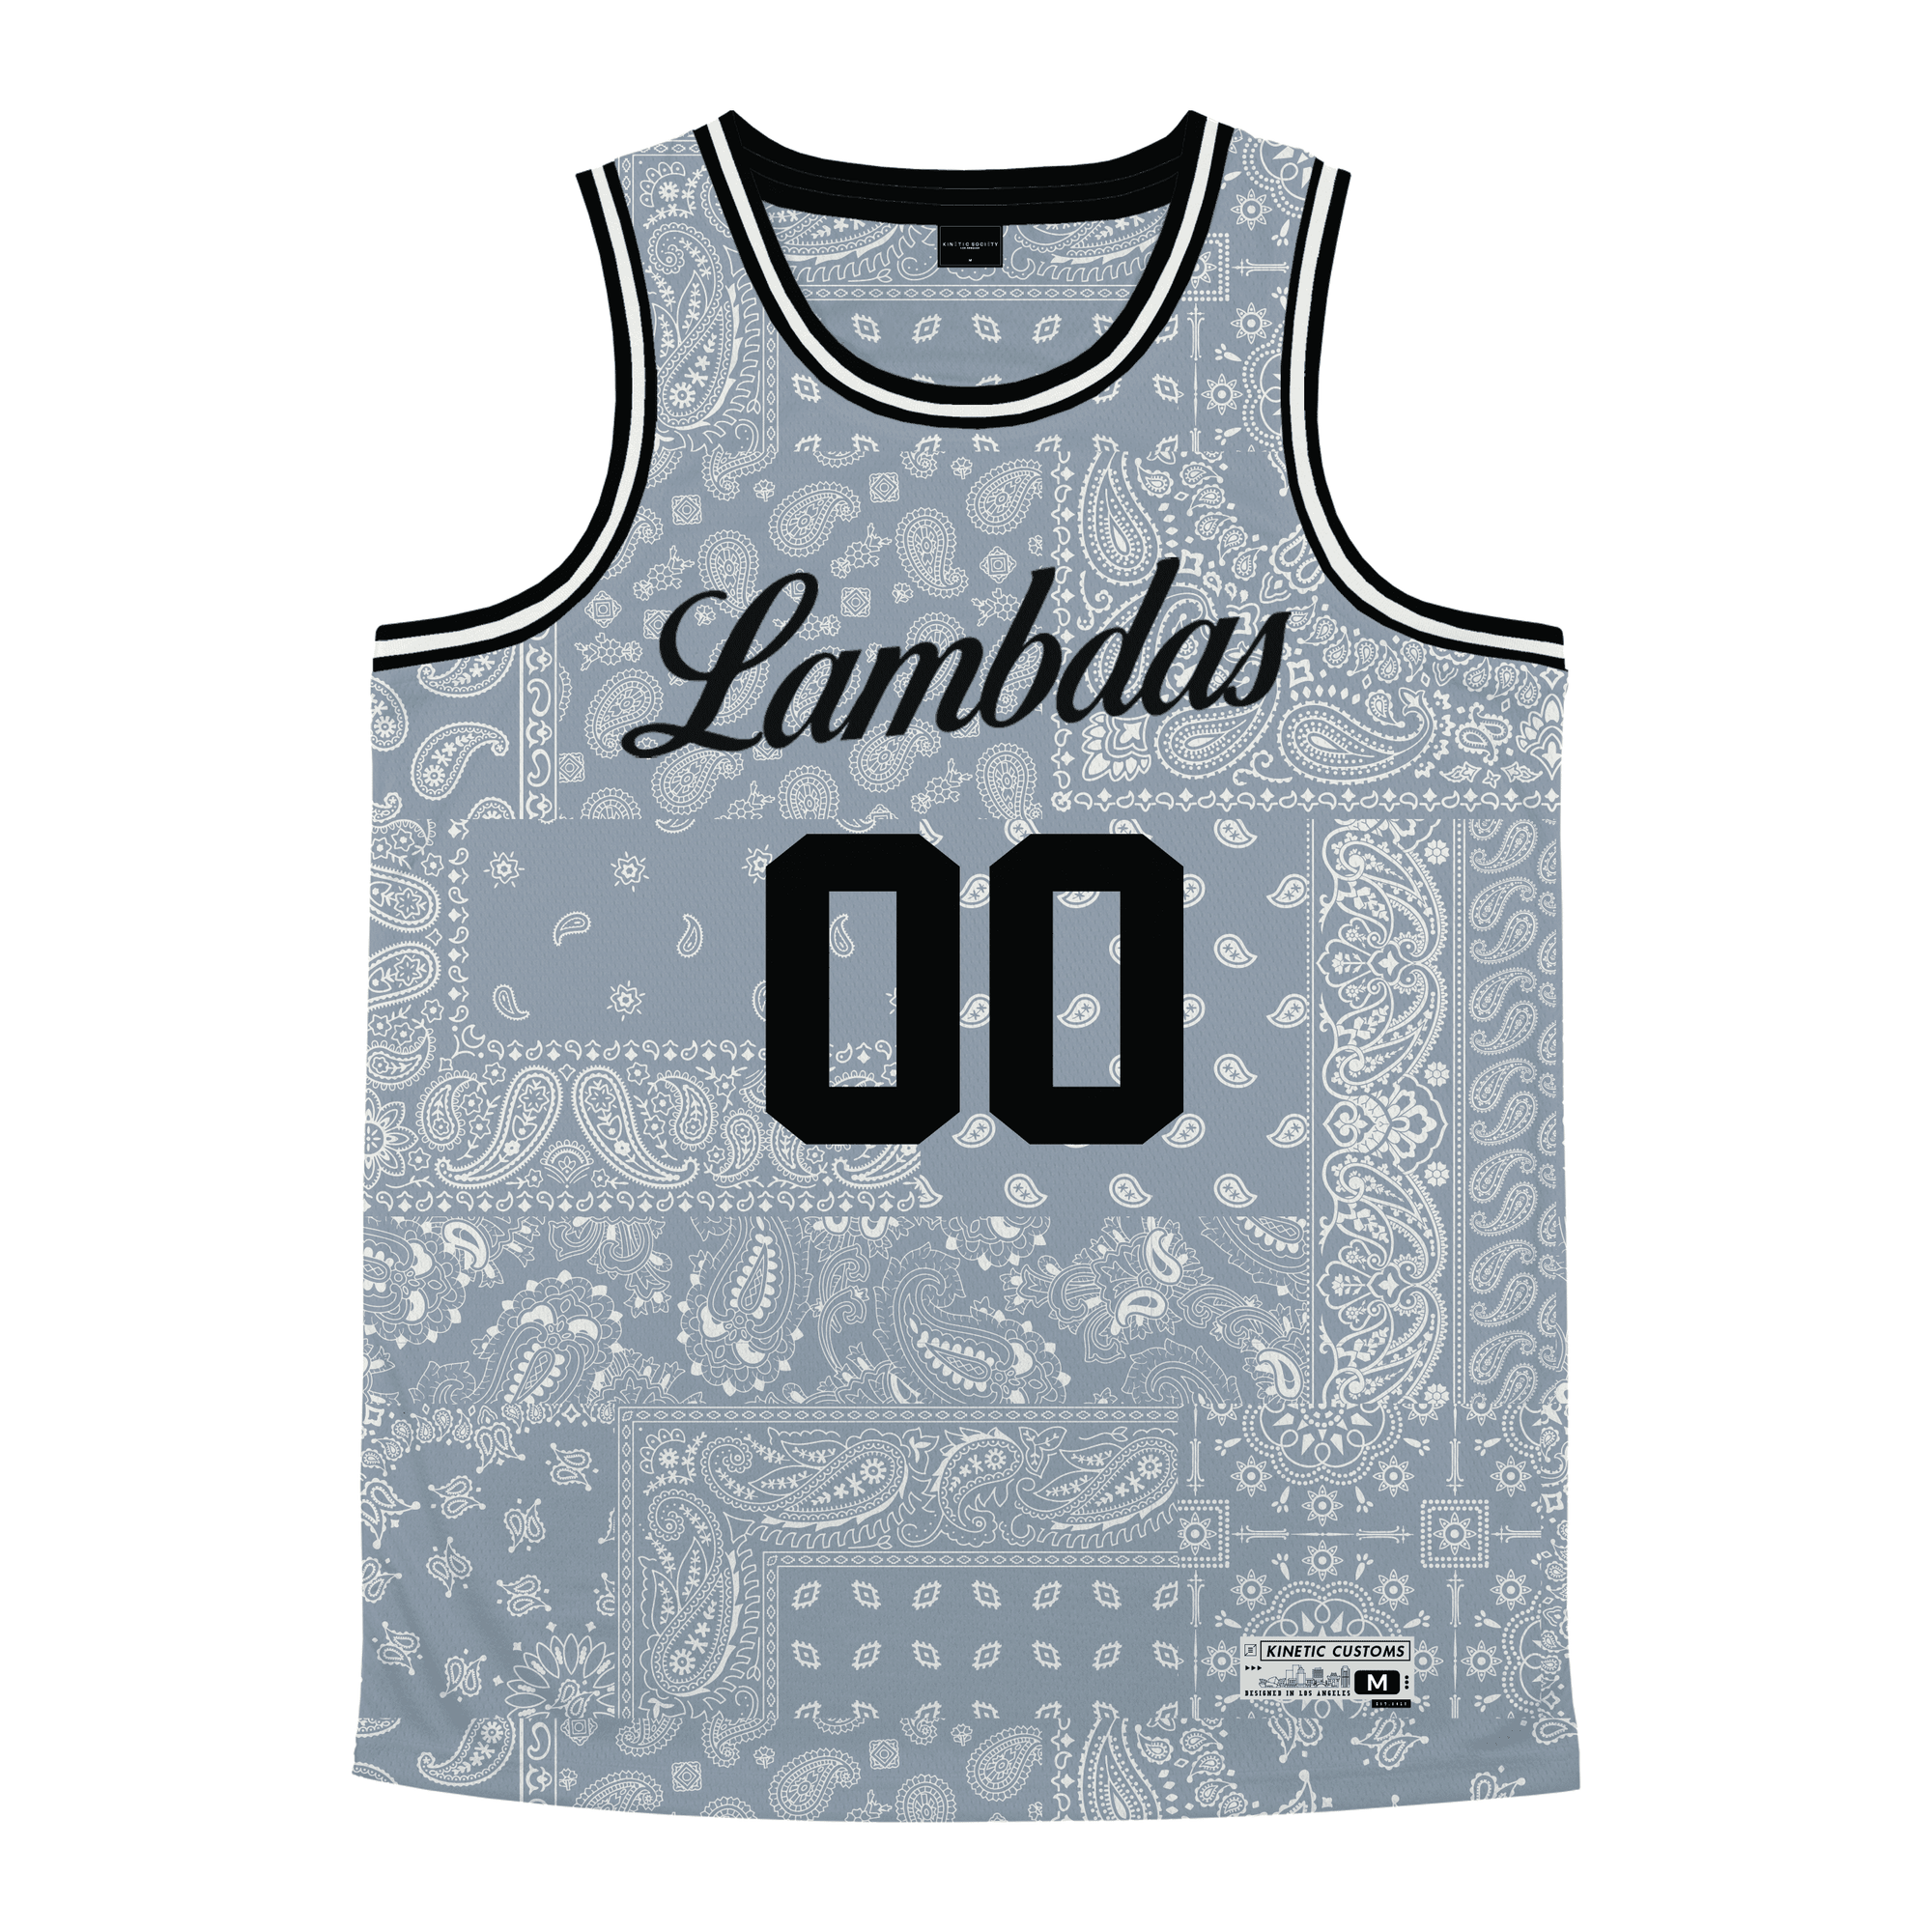 Lambda Phi Epsilon - Slate Bandana - Basketball Jersey